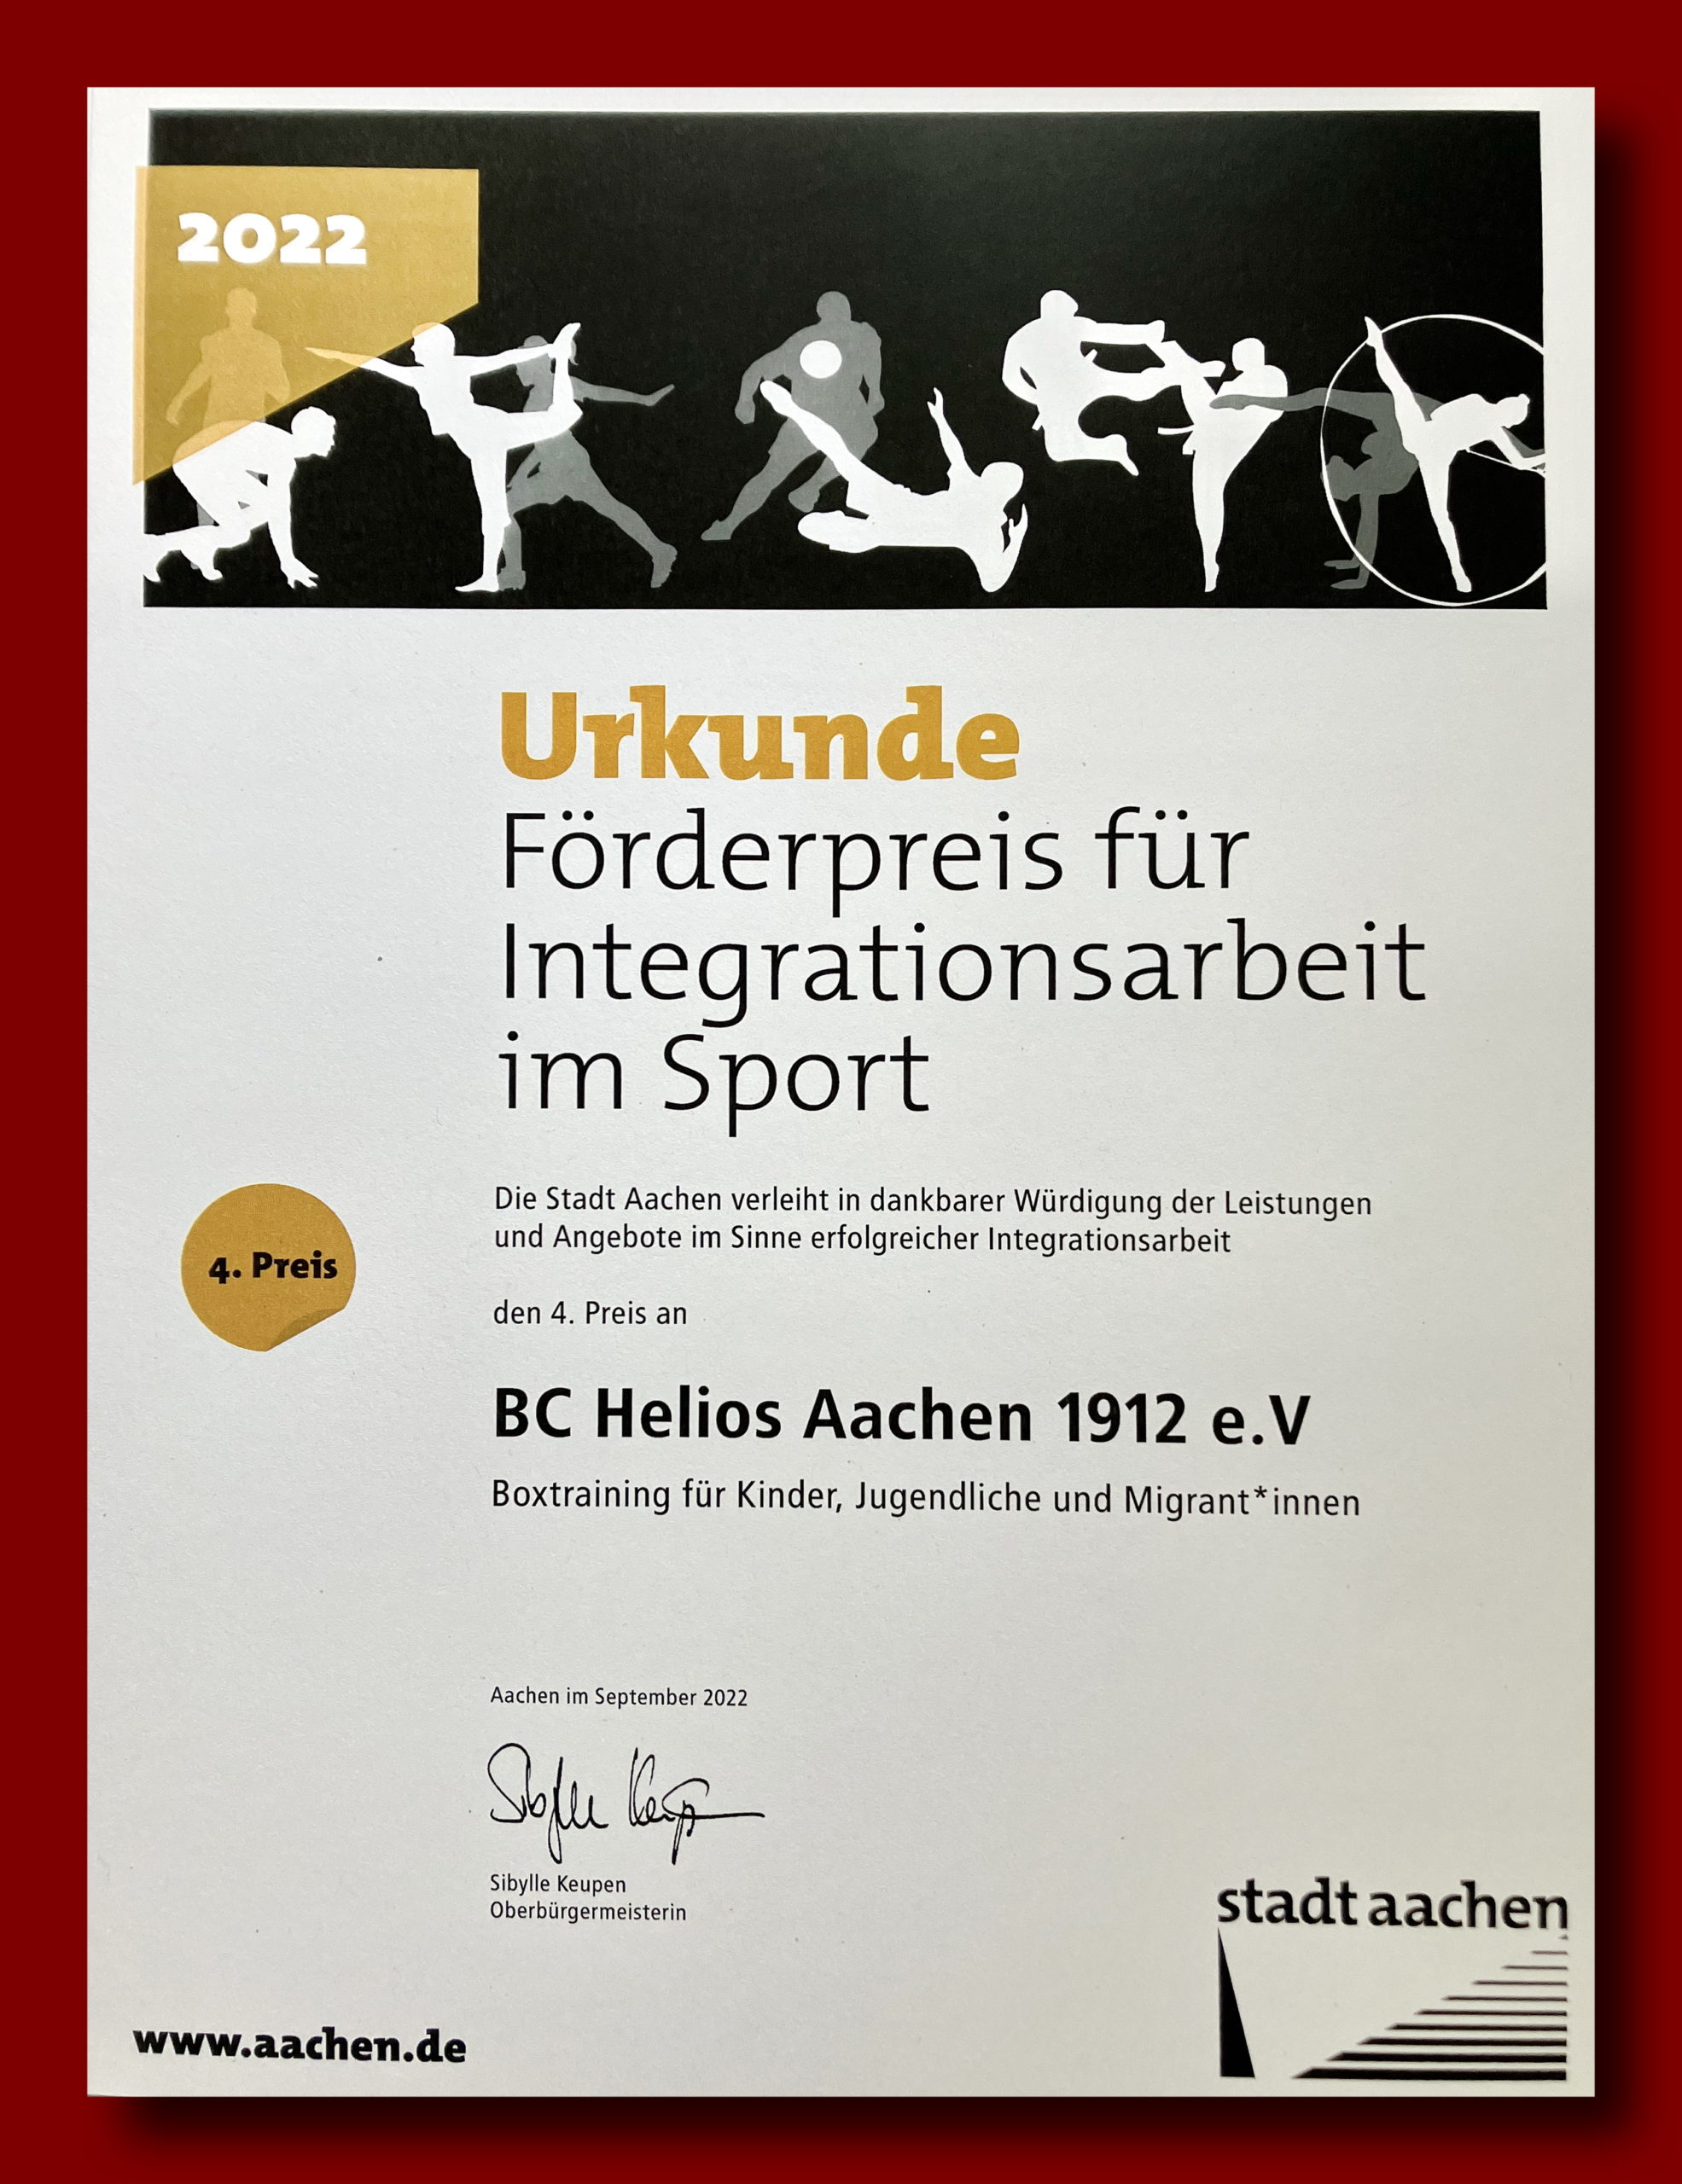 You are currently viewing Förderpreis für Integrationsarbeit im Sport